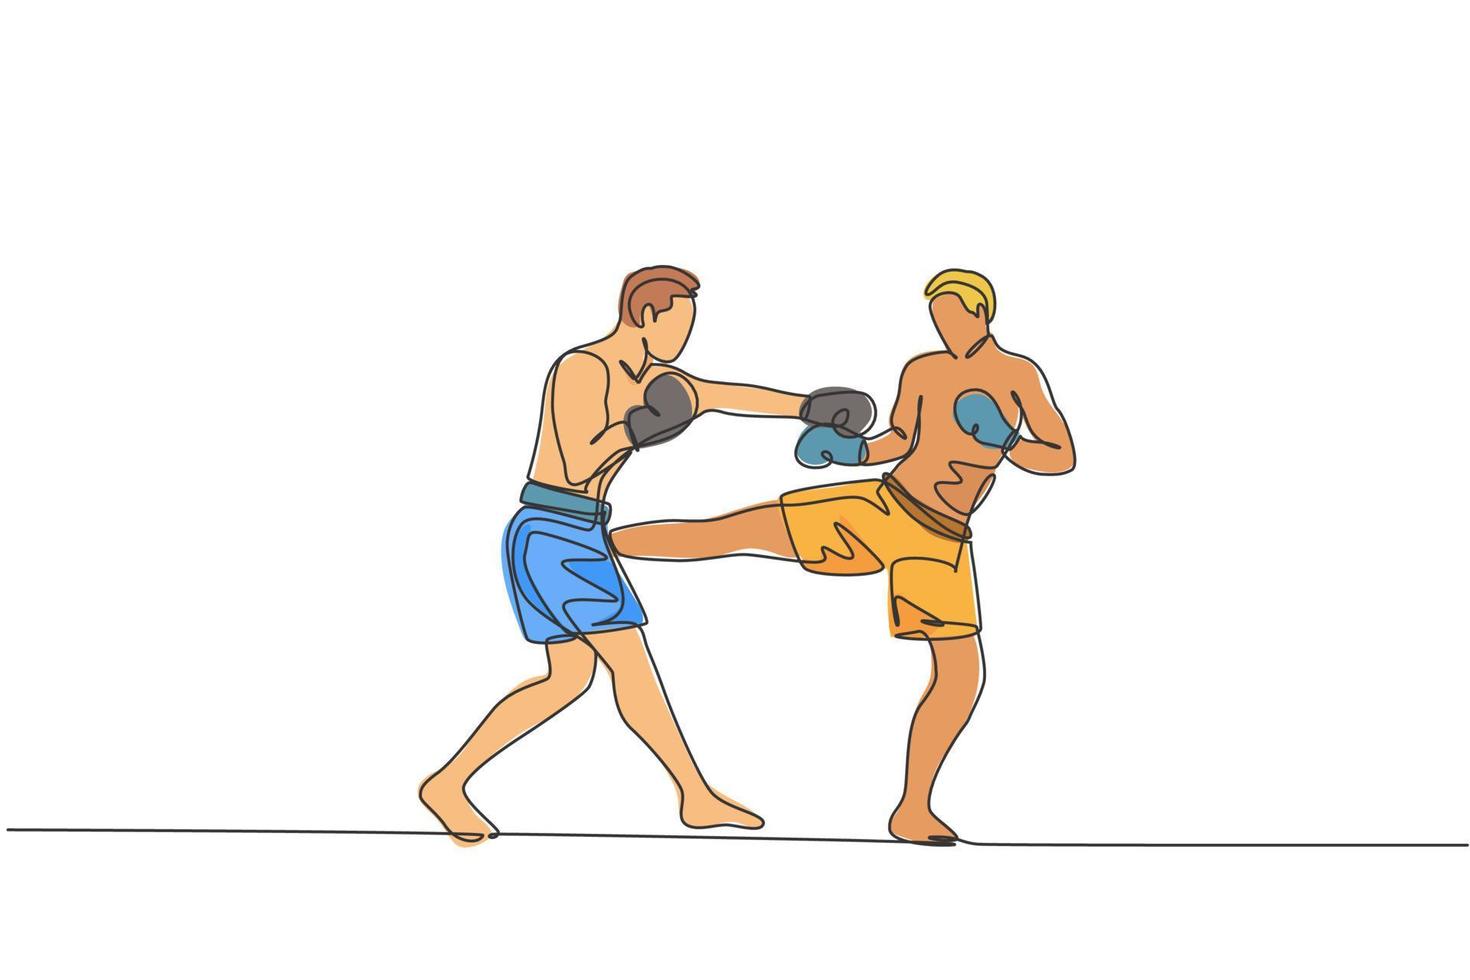 um único desenho de linha de kickboxer jovem enérgico lutando no torneio local no gráfico de ilustração vetorial de arena de boxe. conceito de esporte de estilo de vida saudável. design moderno de desenho de linha contínua vetor